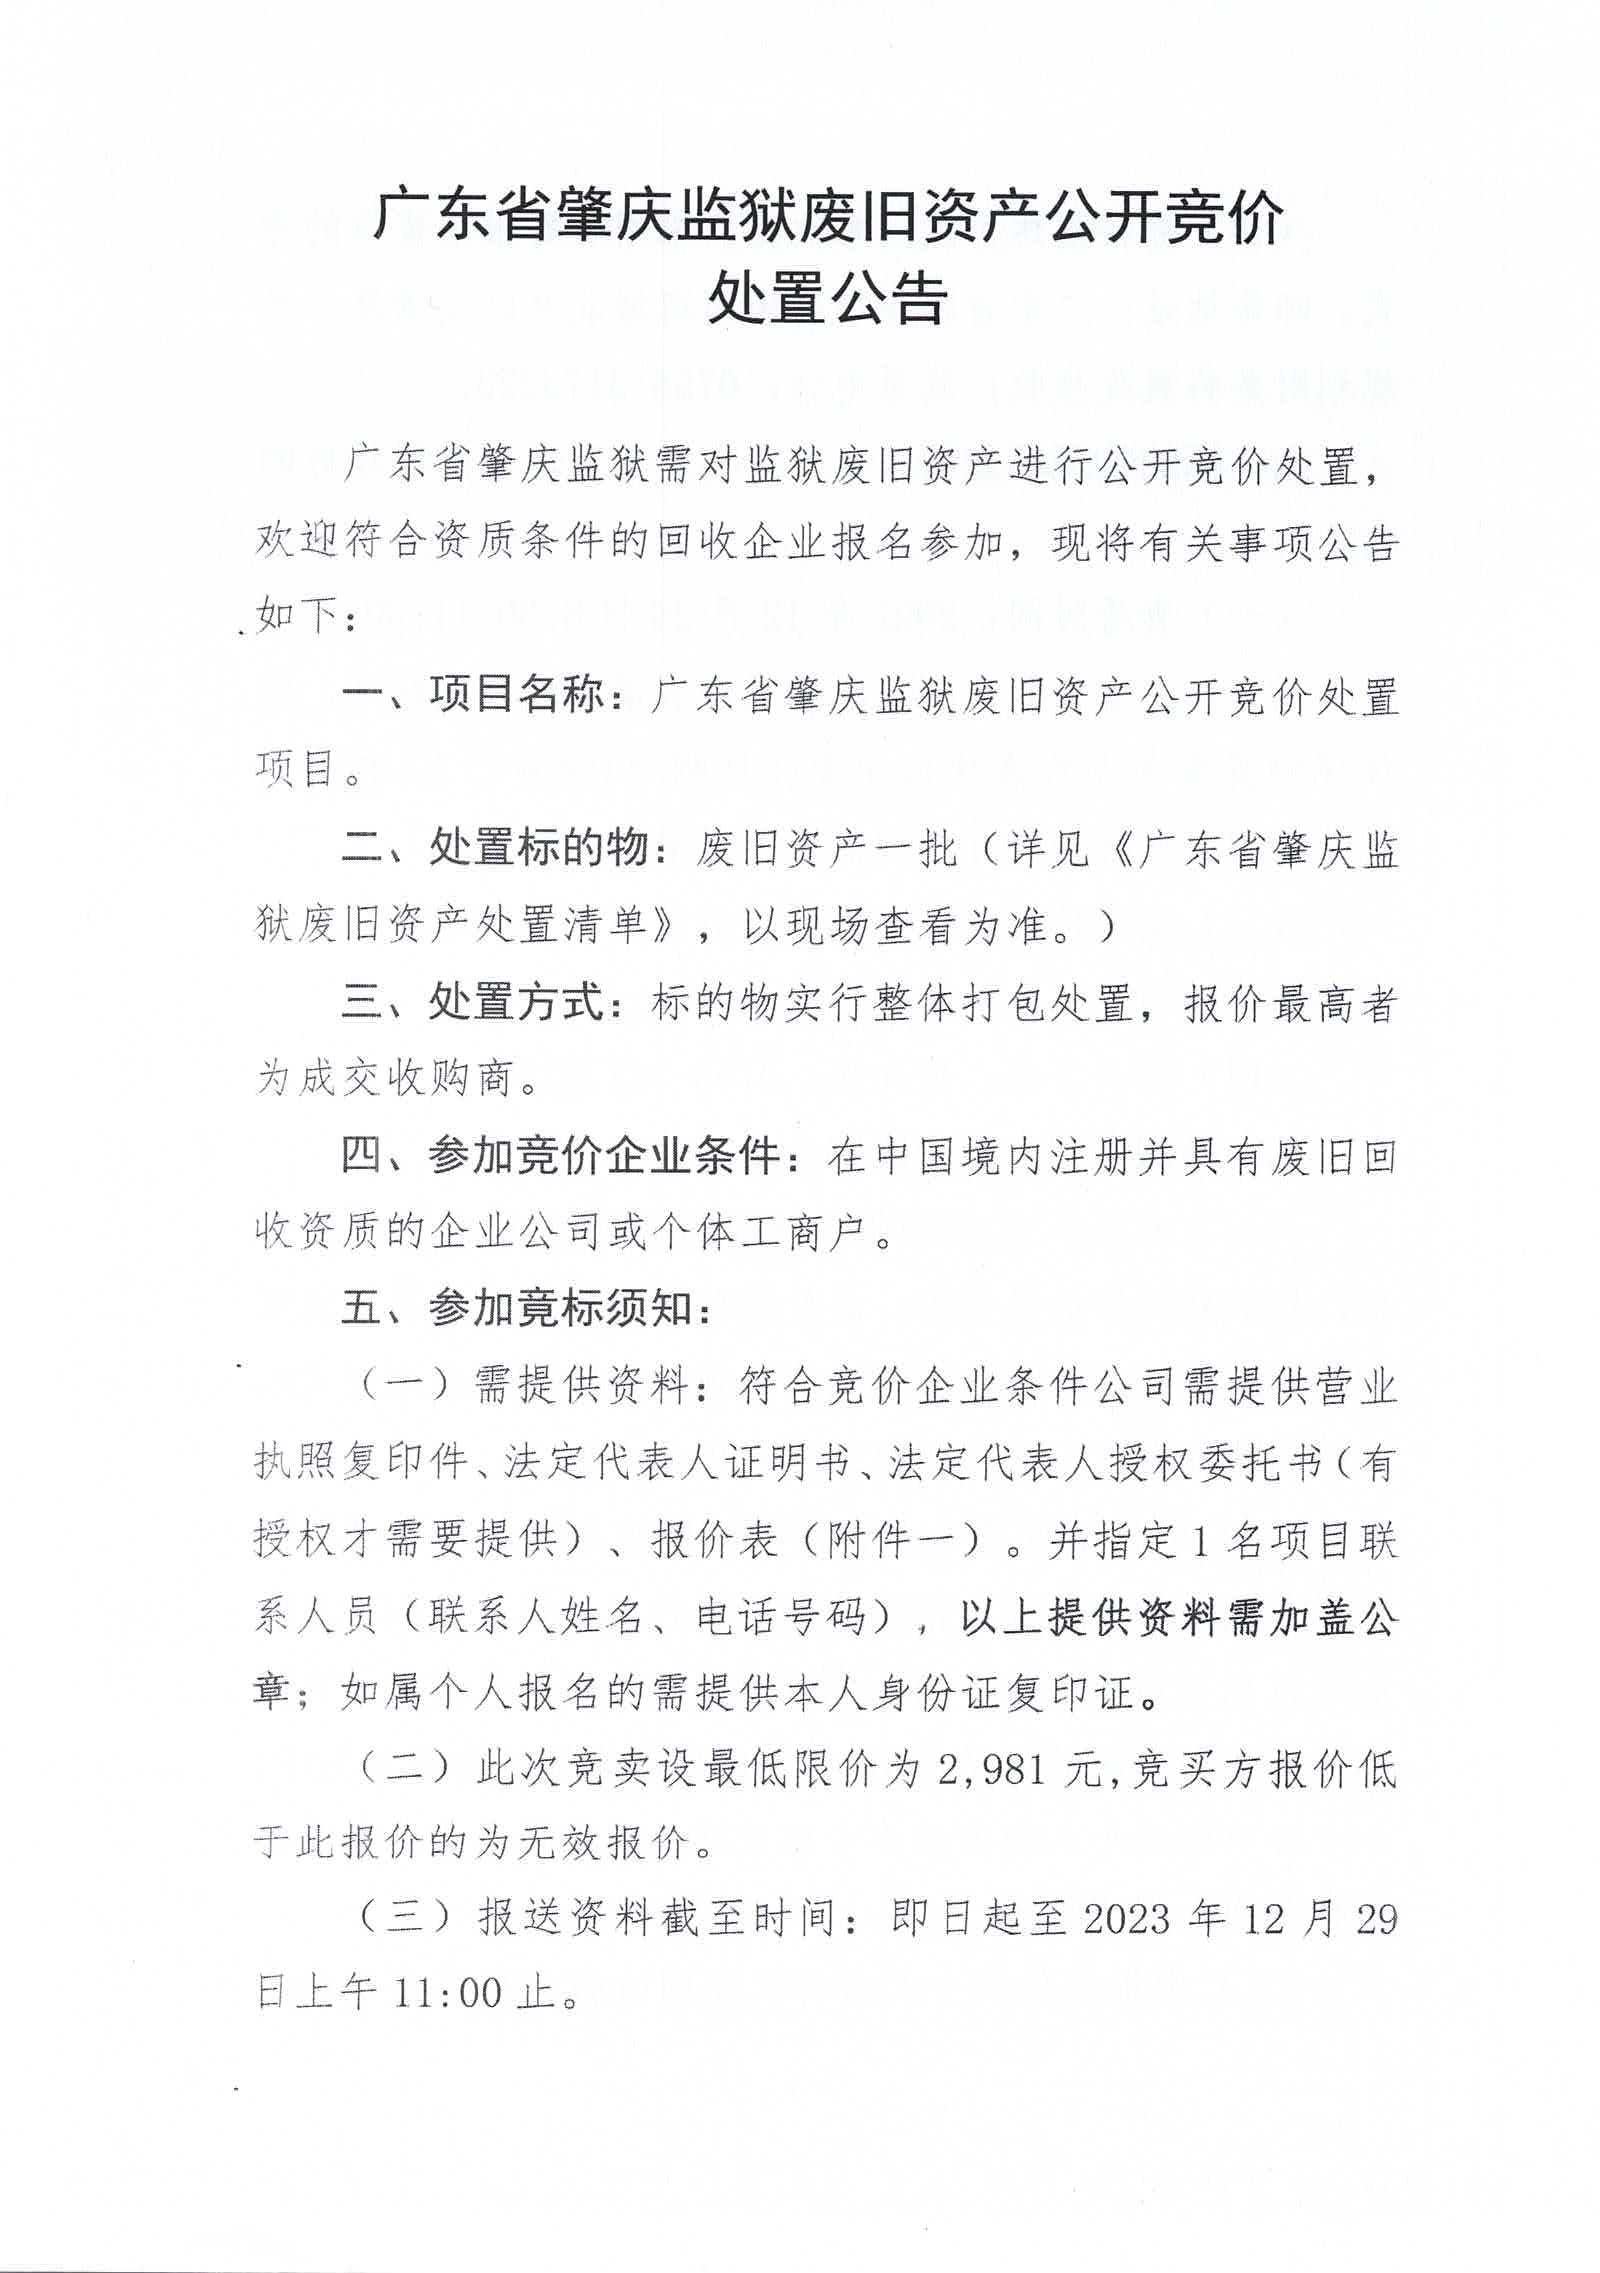 广东省肇庆监狱废旧资产公开竞价处置公告1.jpg